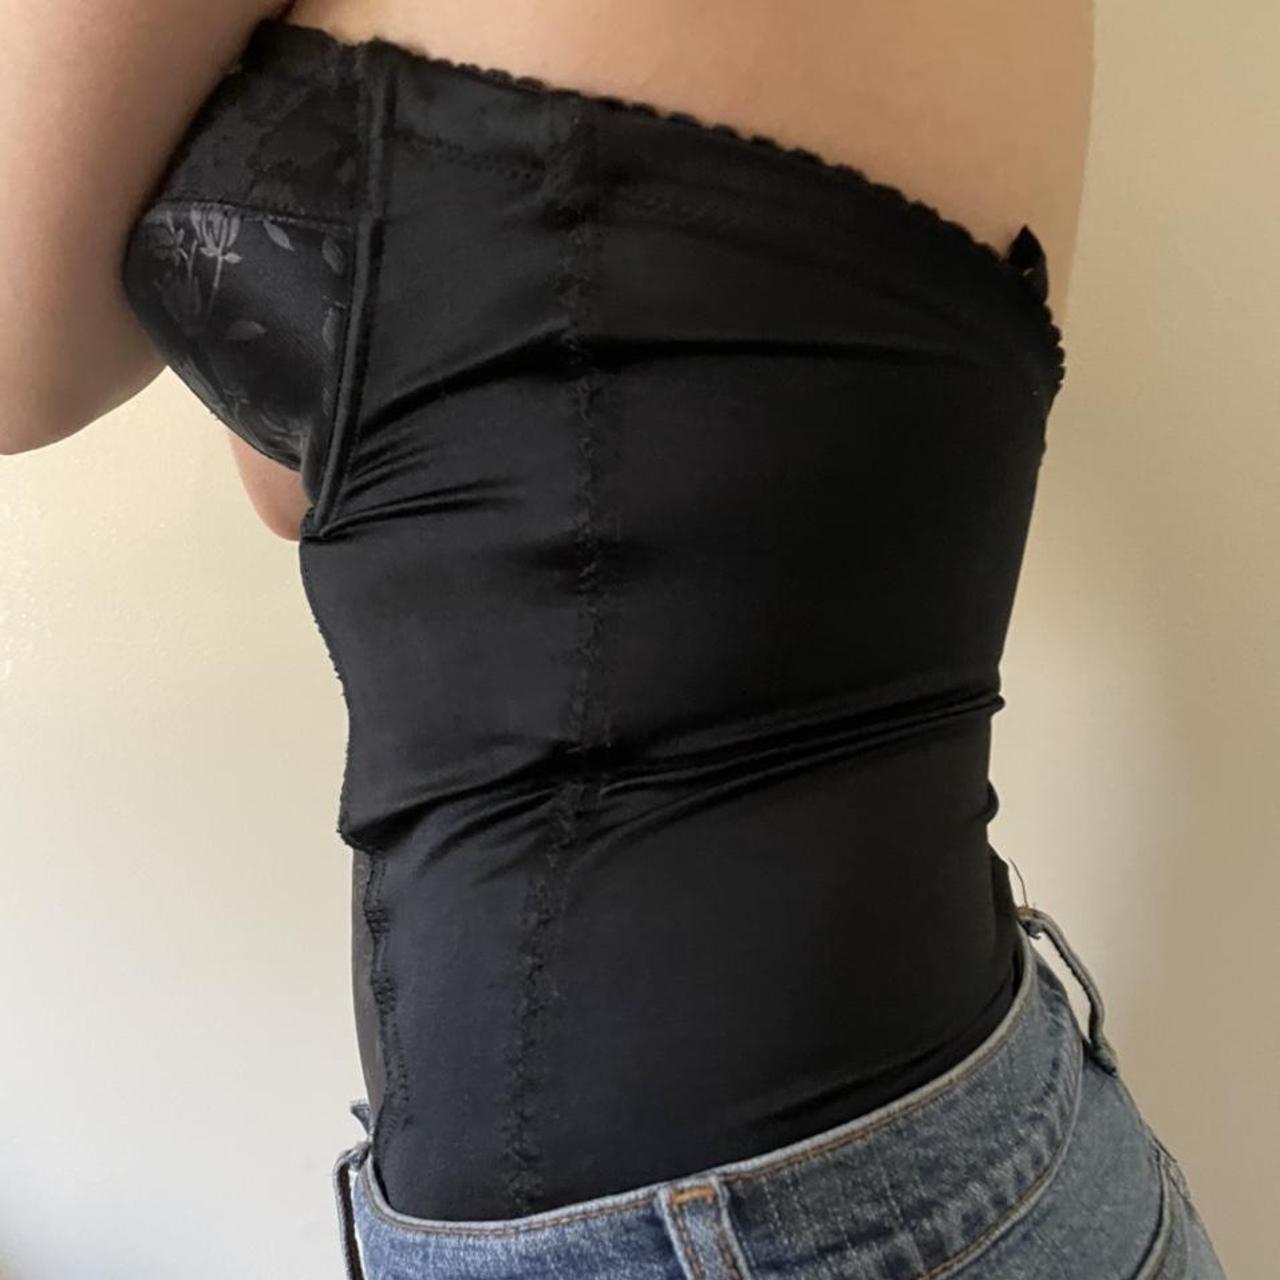 Product Image 2 - black corset/bustier bodysuit 

-black satin